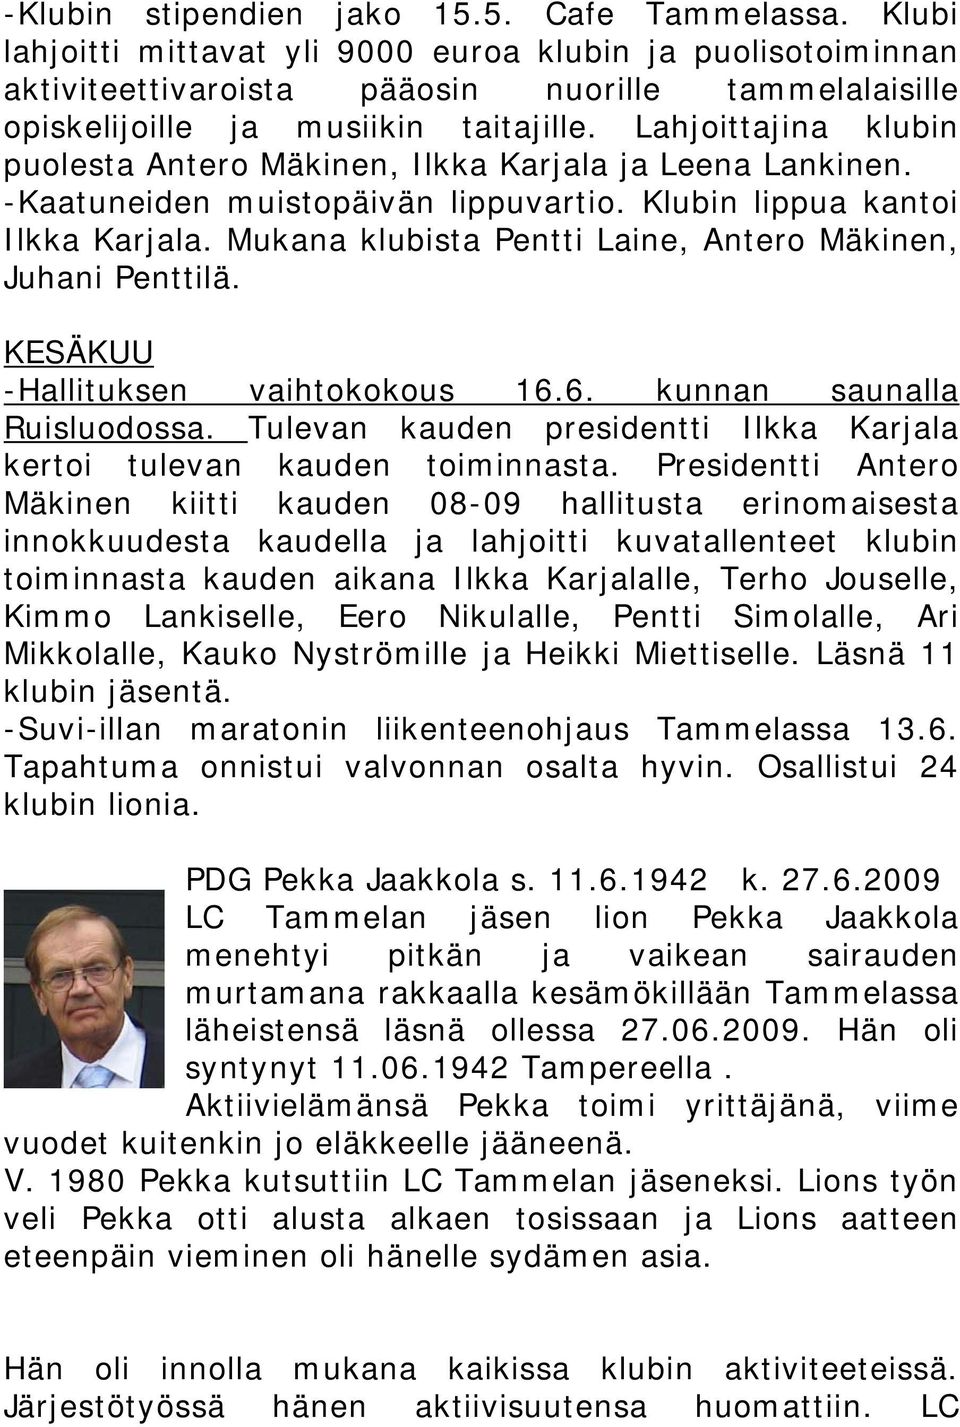 Lahjoittajina klubin puolesta Antero Mäkinen, Ilkka Karjala ja Leena Lankinen. -Kaatuneiden muistopäivän lippuvartio. Klubin lippua kantoi Ilkka Karjala.